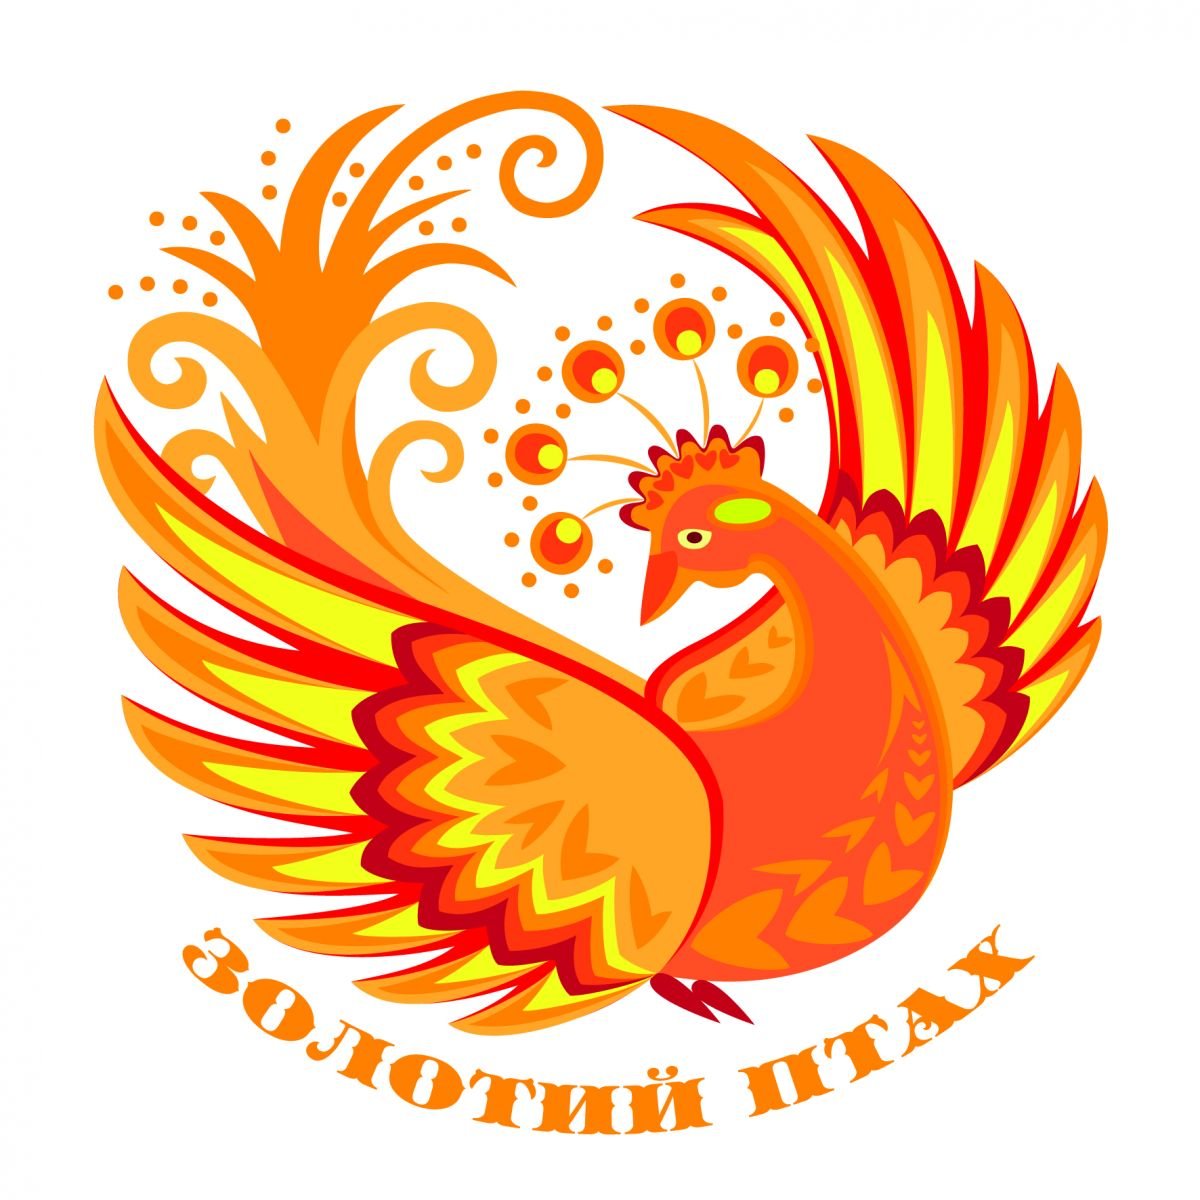 ІІ Всеукраїнський пісенний Фестиваль-конкурс «Золотий птах» запрошує до участі дітей та молодь з обмеженими можливостями